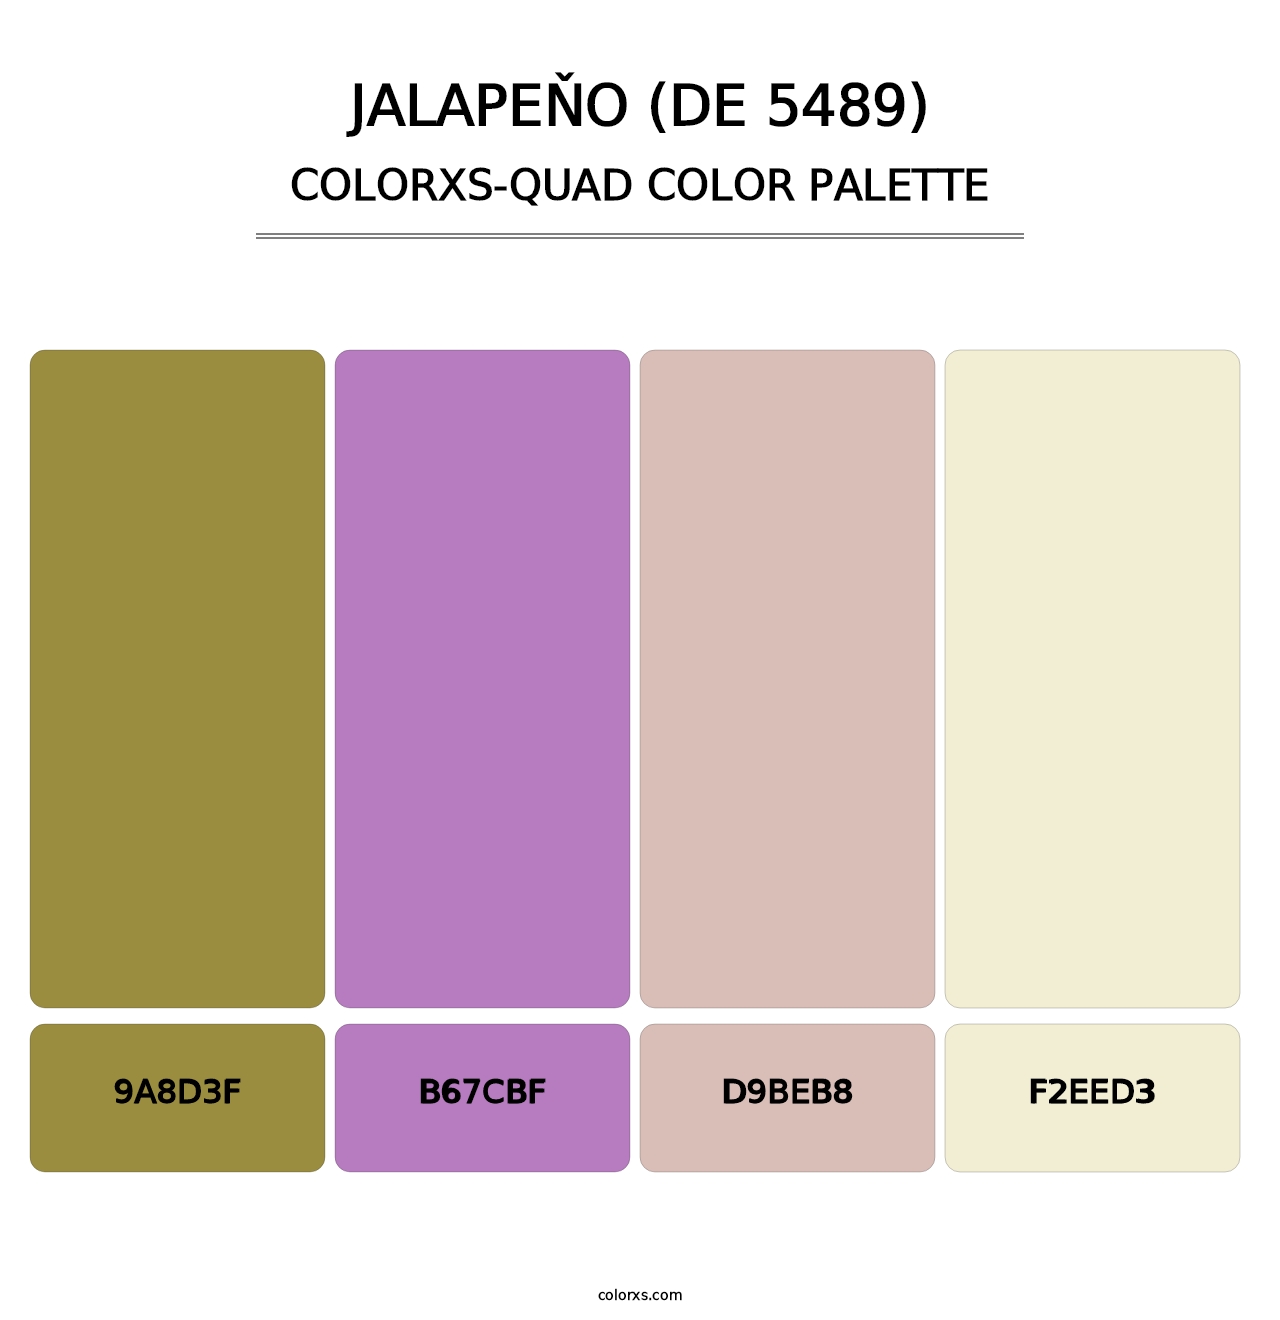 Jalapeňo (DE 5489) - Colorxs Quad Palette